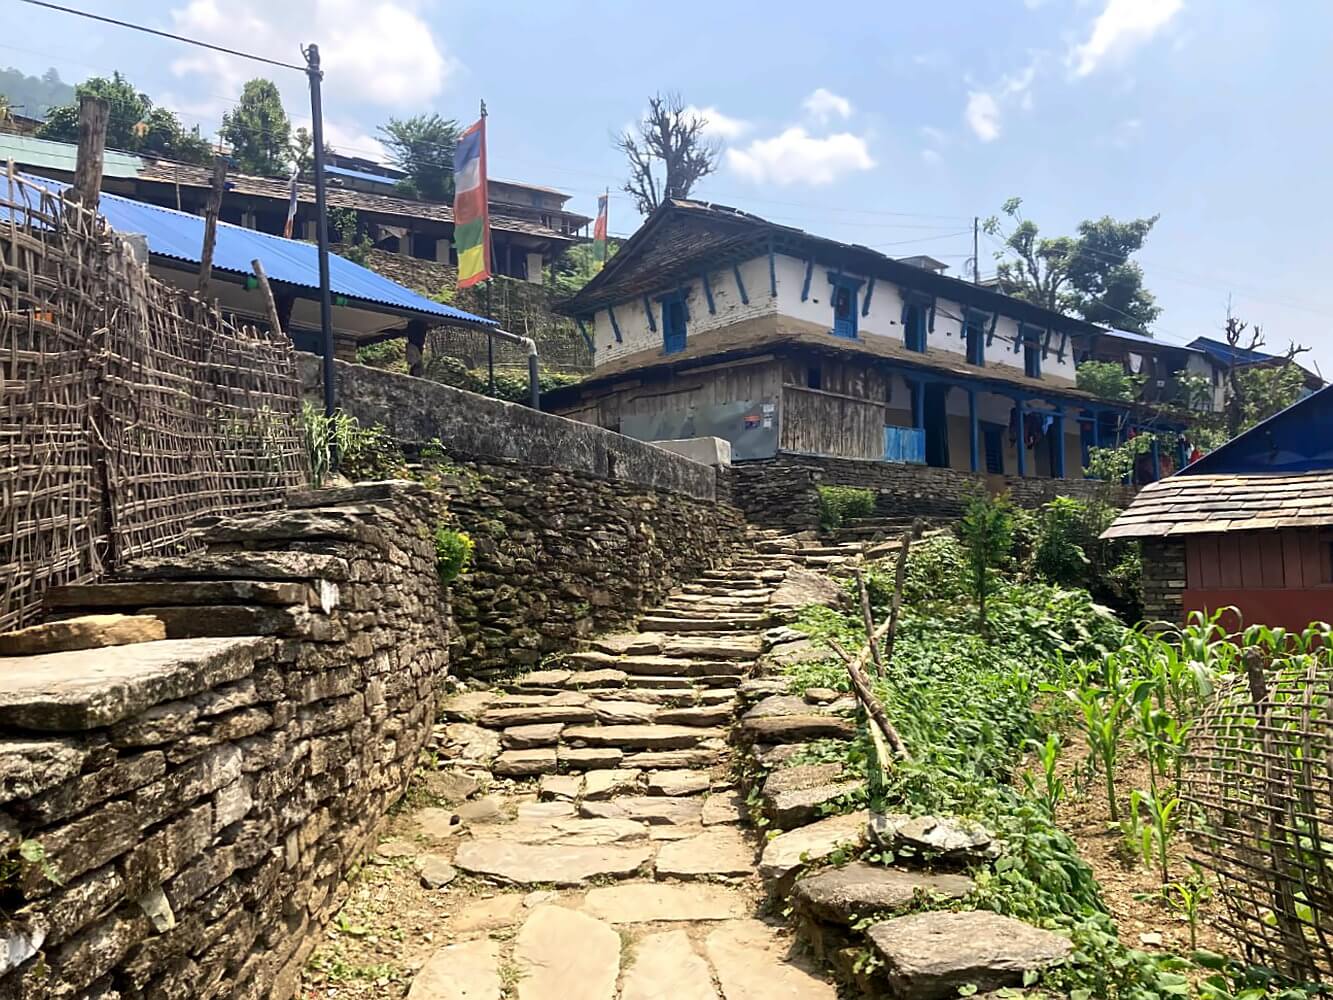 Landruk Dorf in Nepal Mardi Himal.